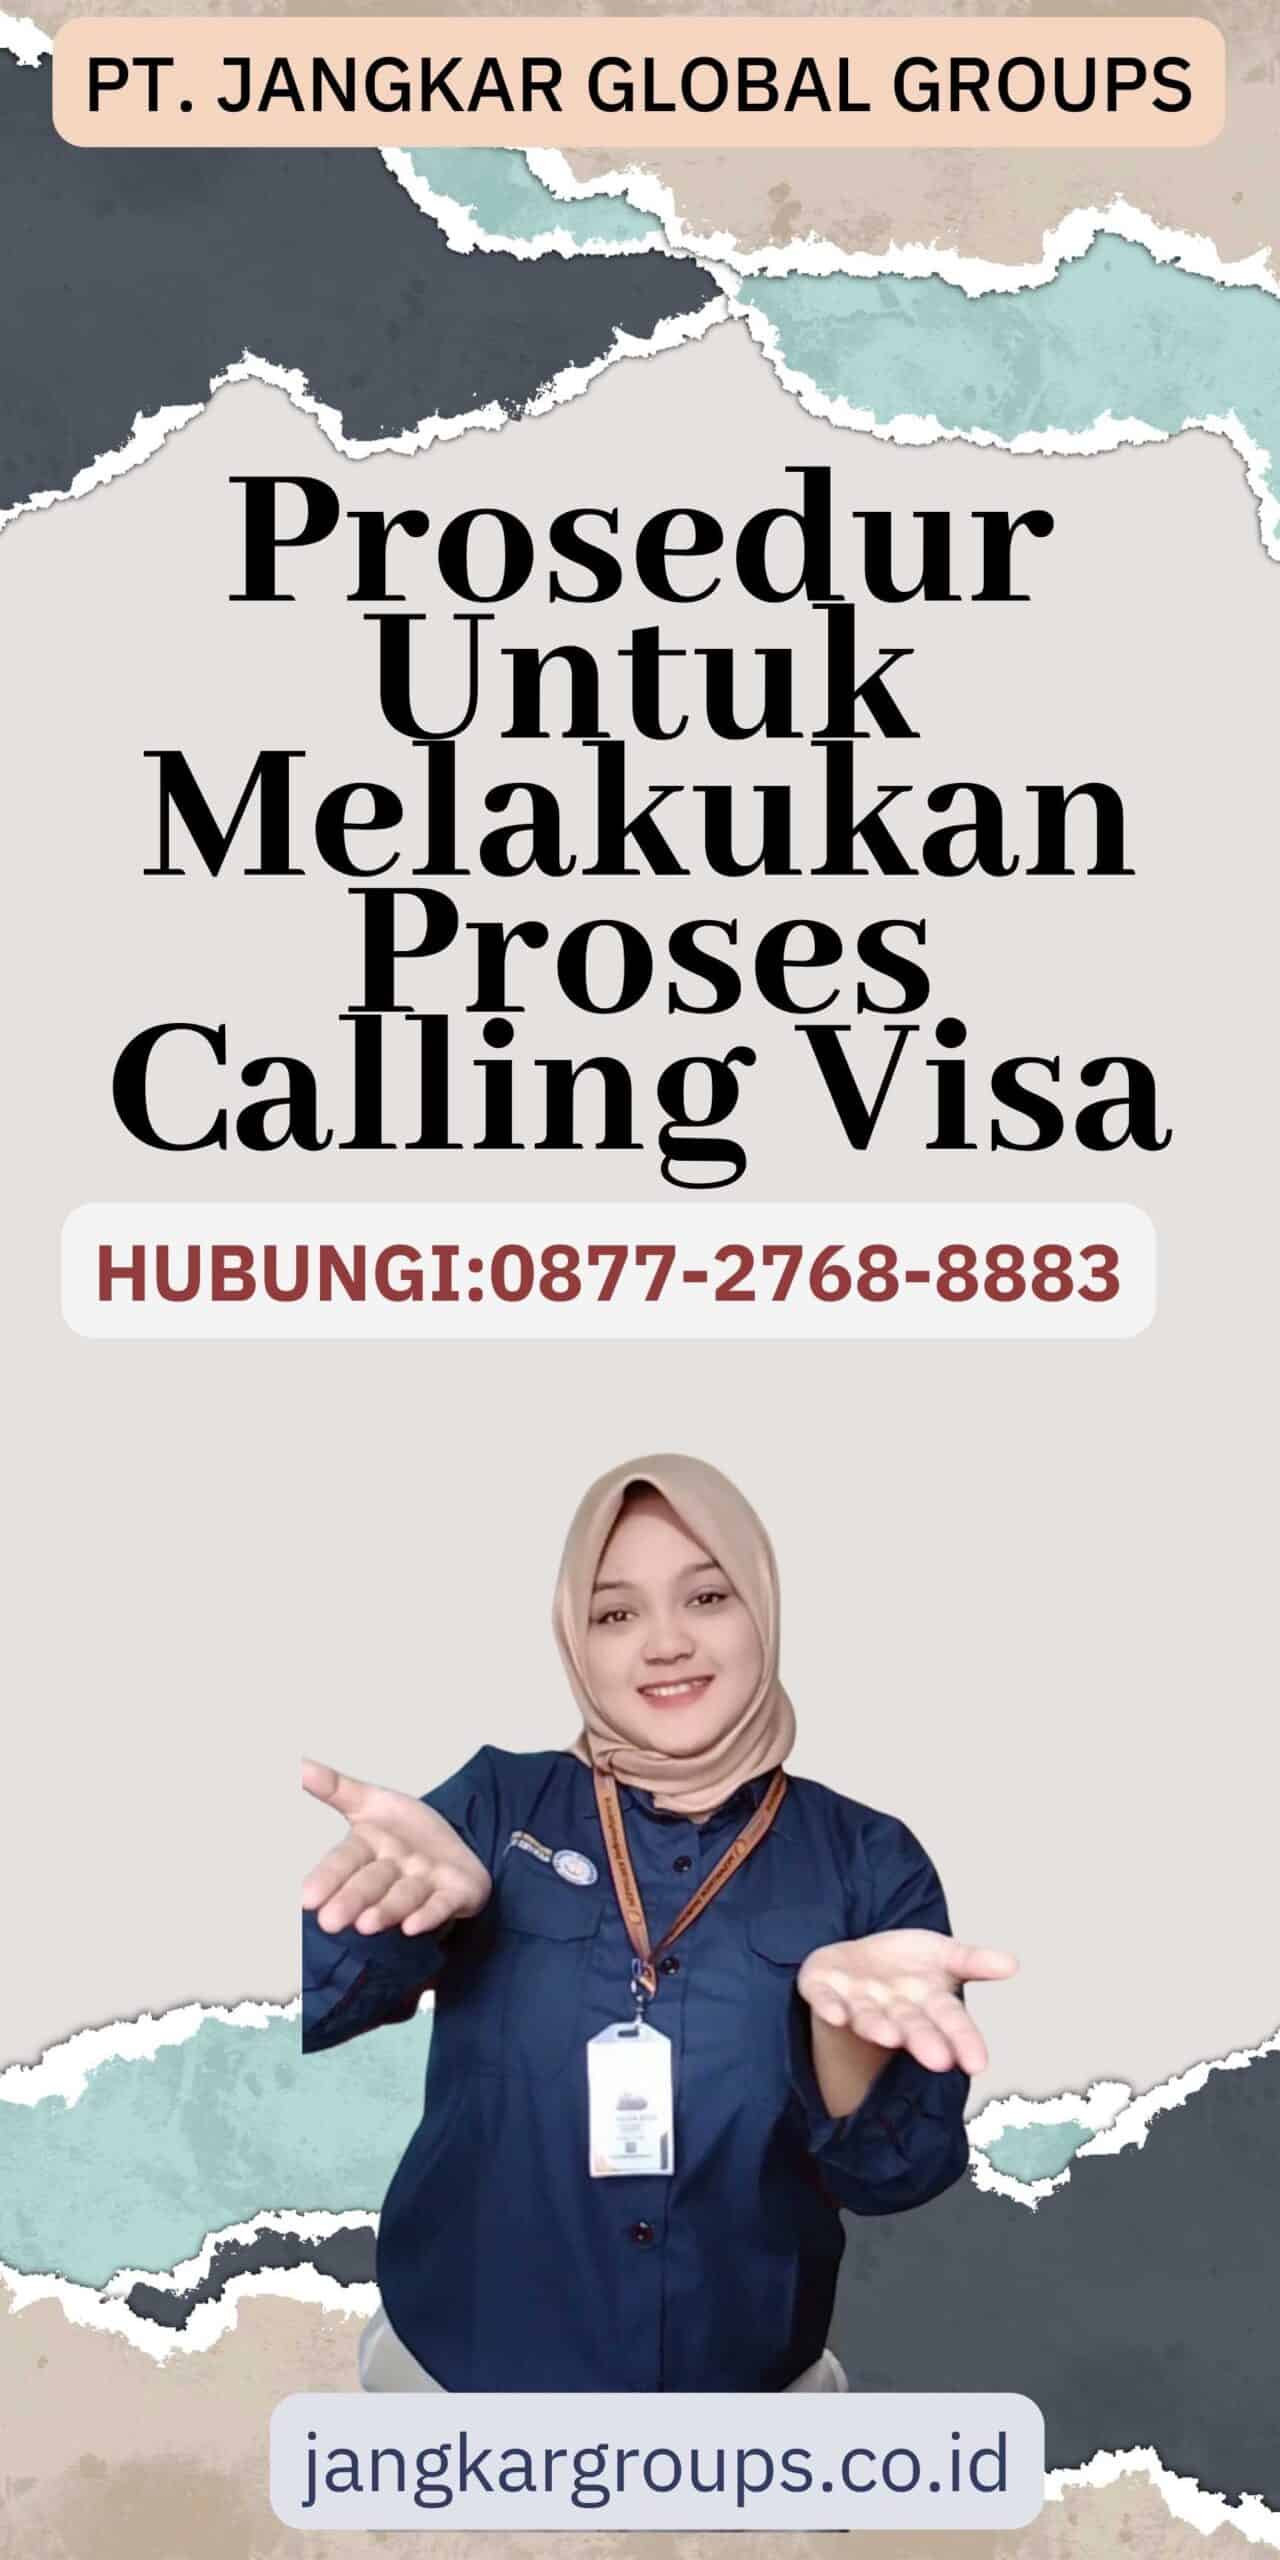 Prosedur Untuk Melakukan Proses Calling Visa